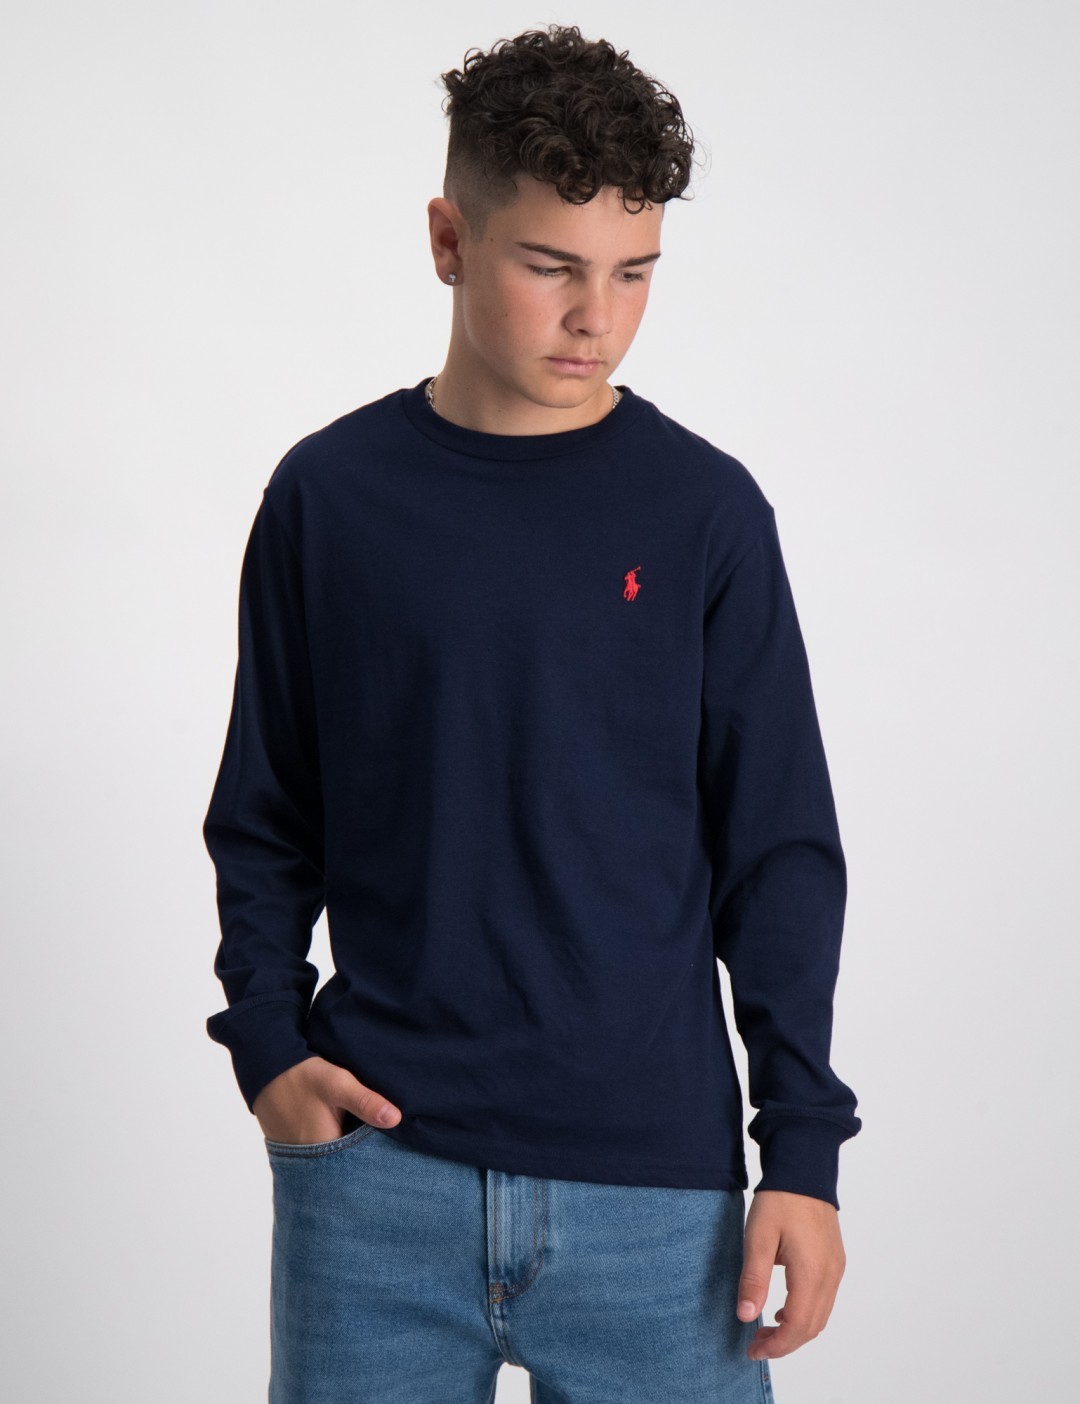 Gelijkenis Vervagen Zeug Blauw Cotton Jersey Long-Sleeve Tee voor Jongens | Kids Brand Store